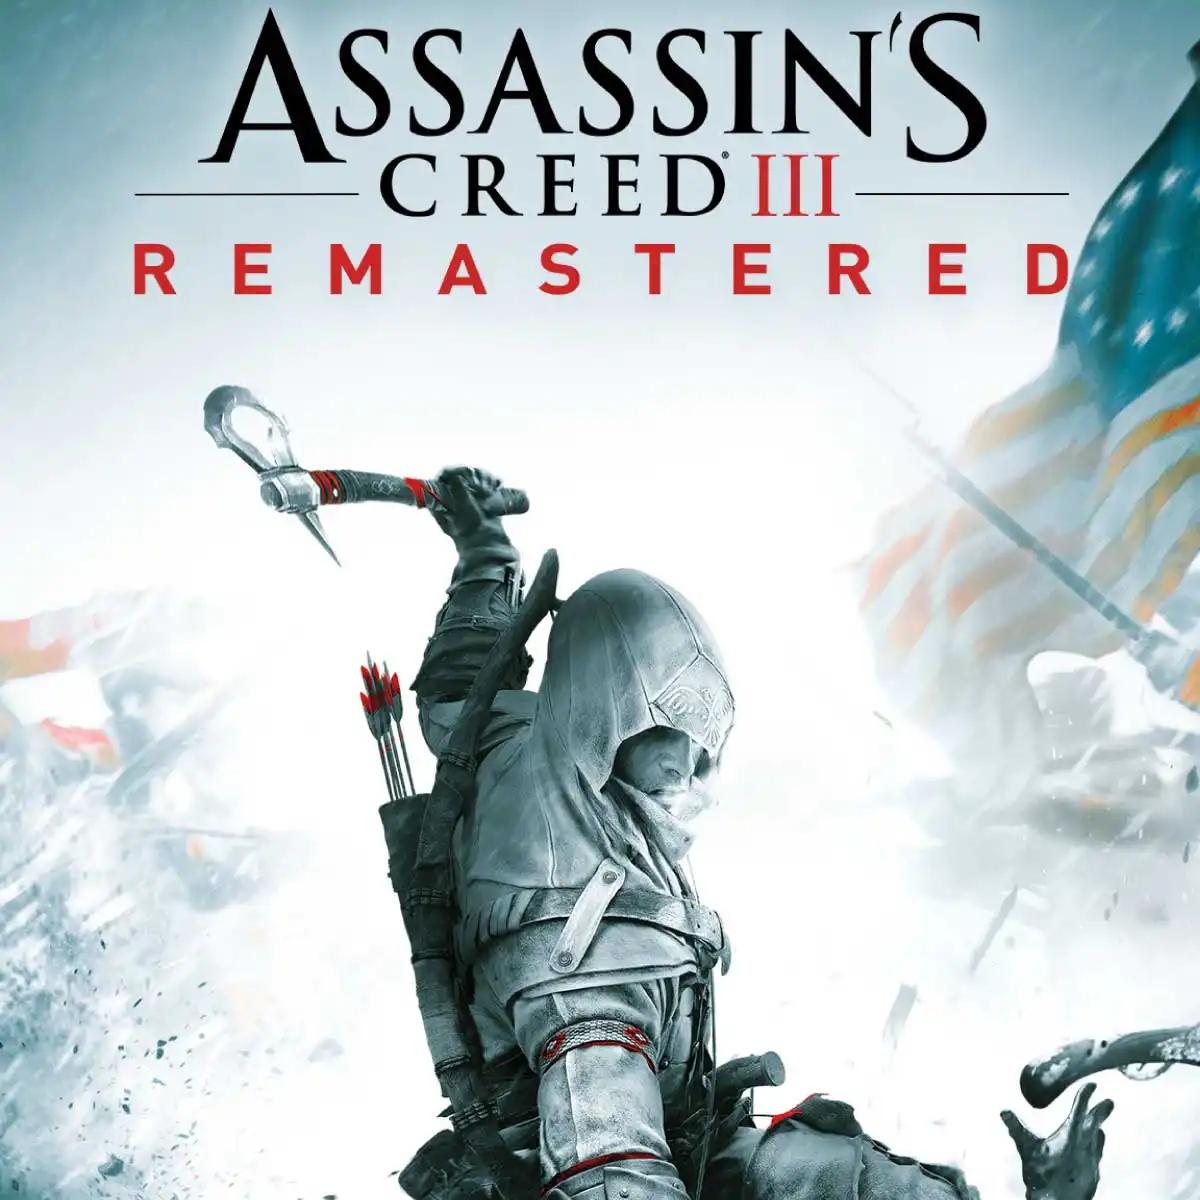 En İyi Assassin's Creed Oyunları Assassin’s Creed III